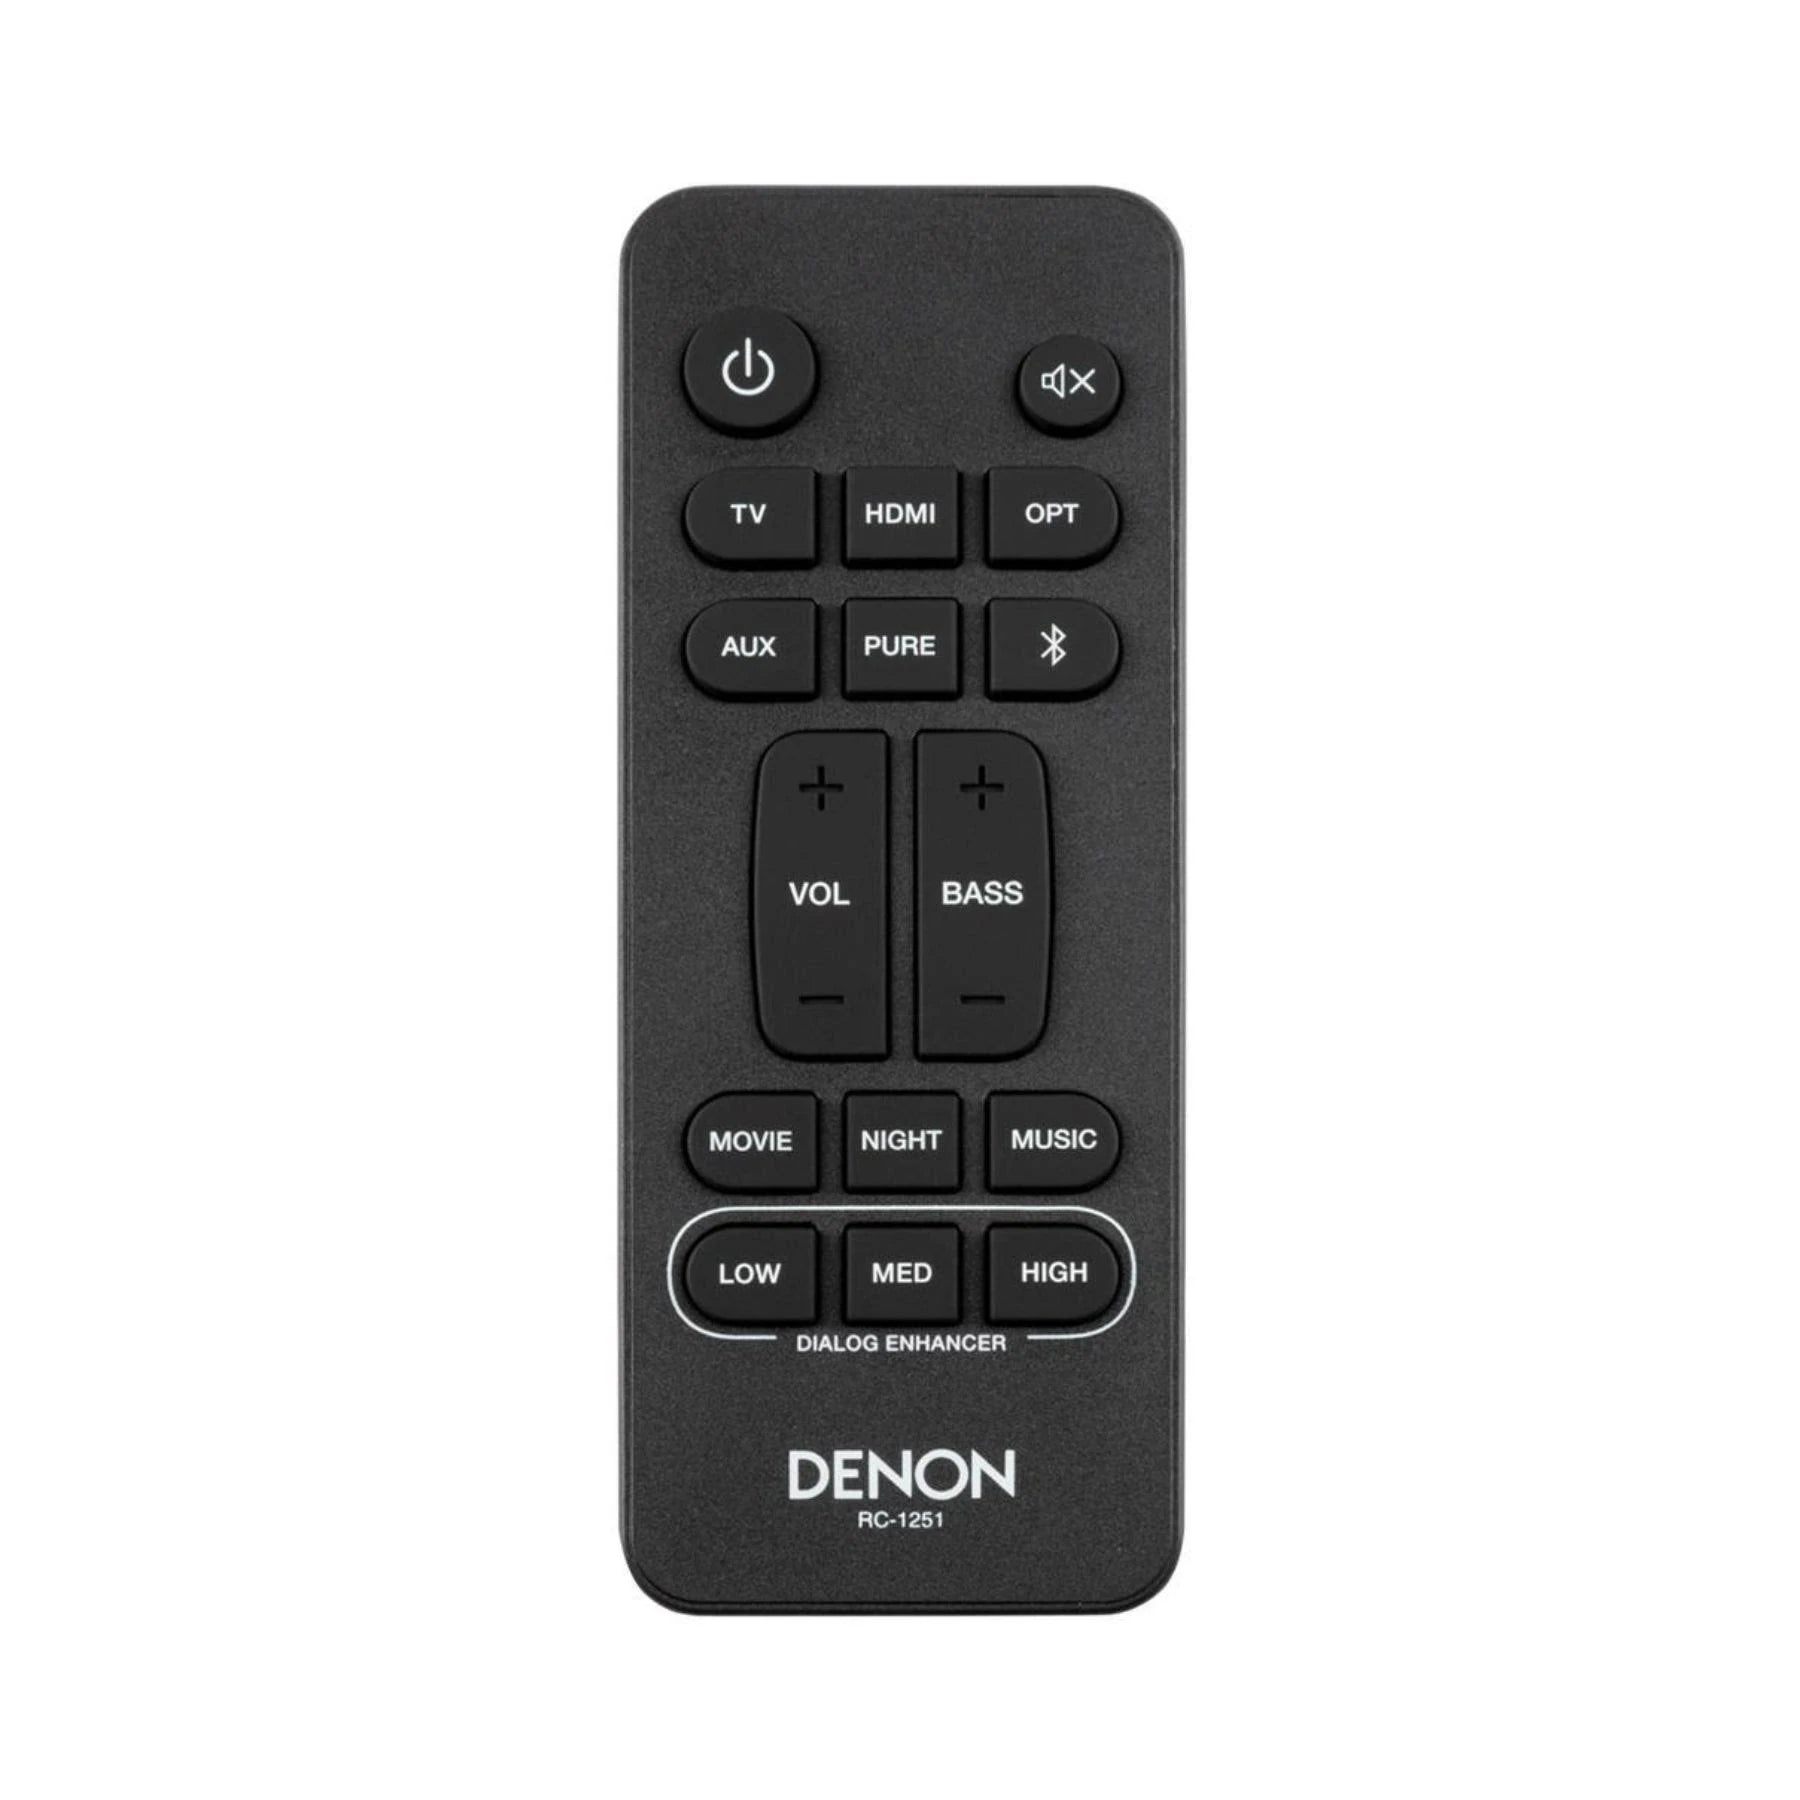 Denon DHT-S217 Sound Bar remote